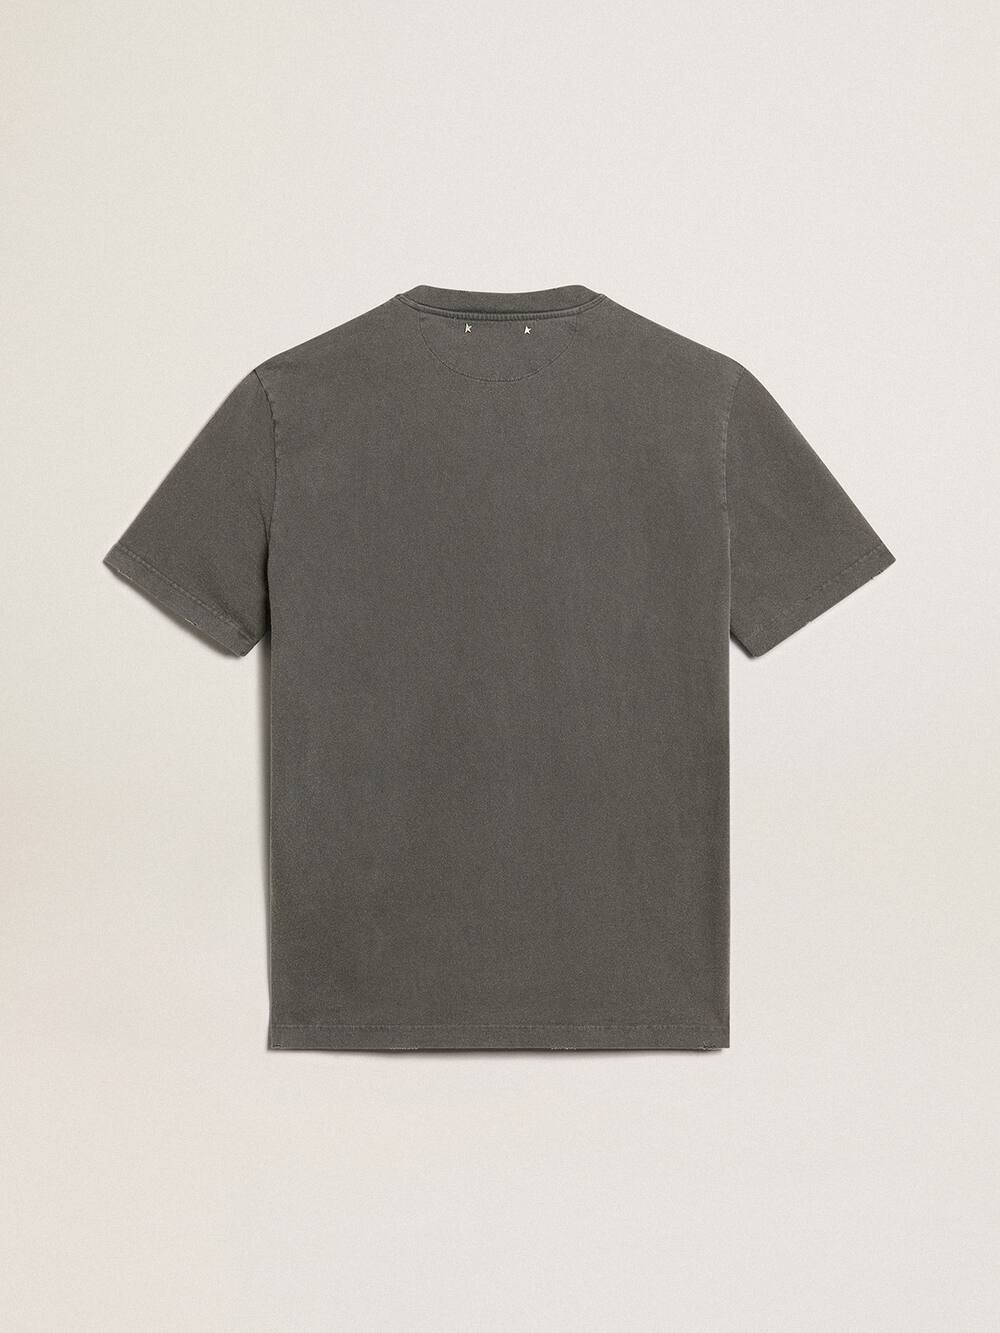 Golden Goose - T-shirt da uomo di colore grigio antracite dal trattamento distressed in 